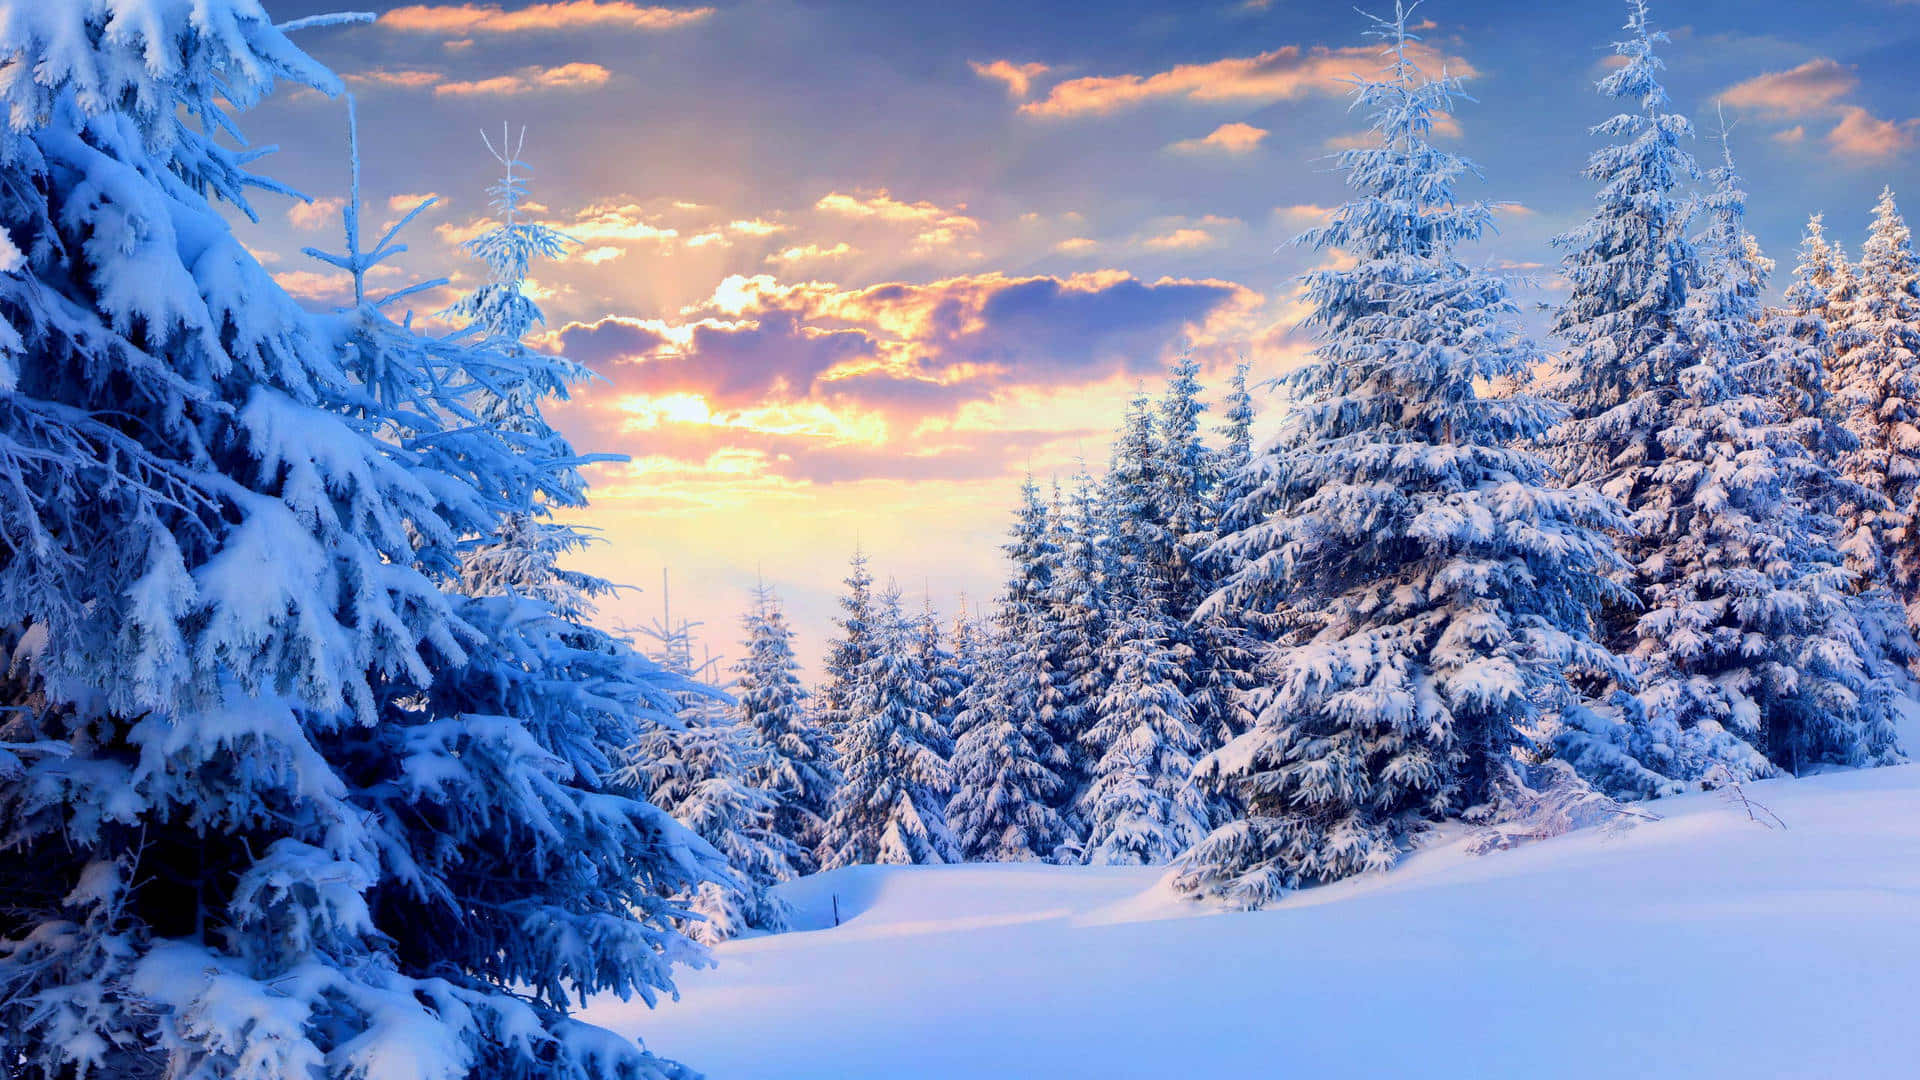 Winter_ Sunset_ Snowy_ Forest_ Scene.jpg Wallpaper